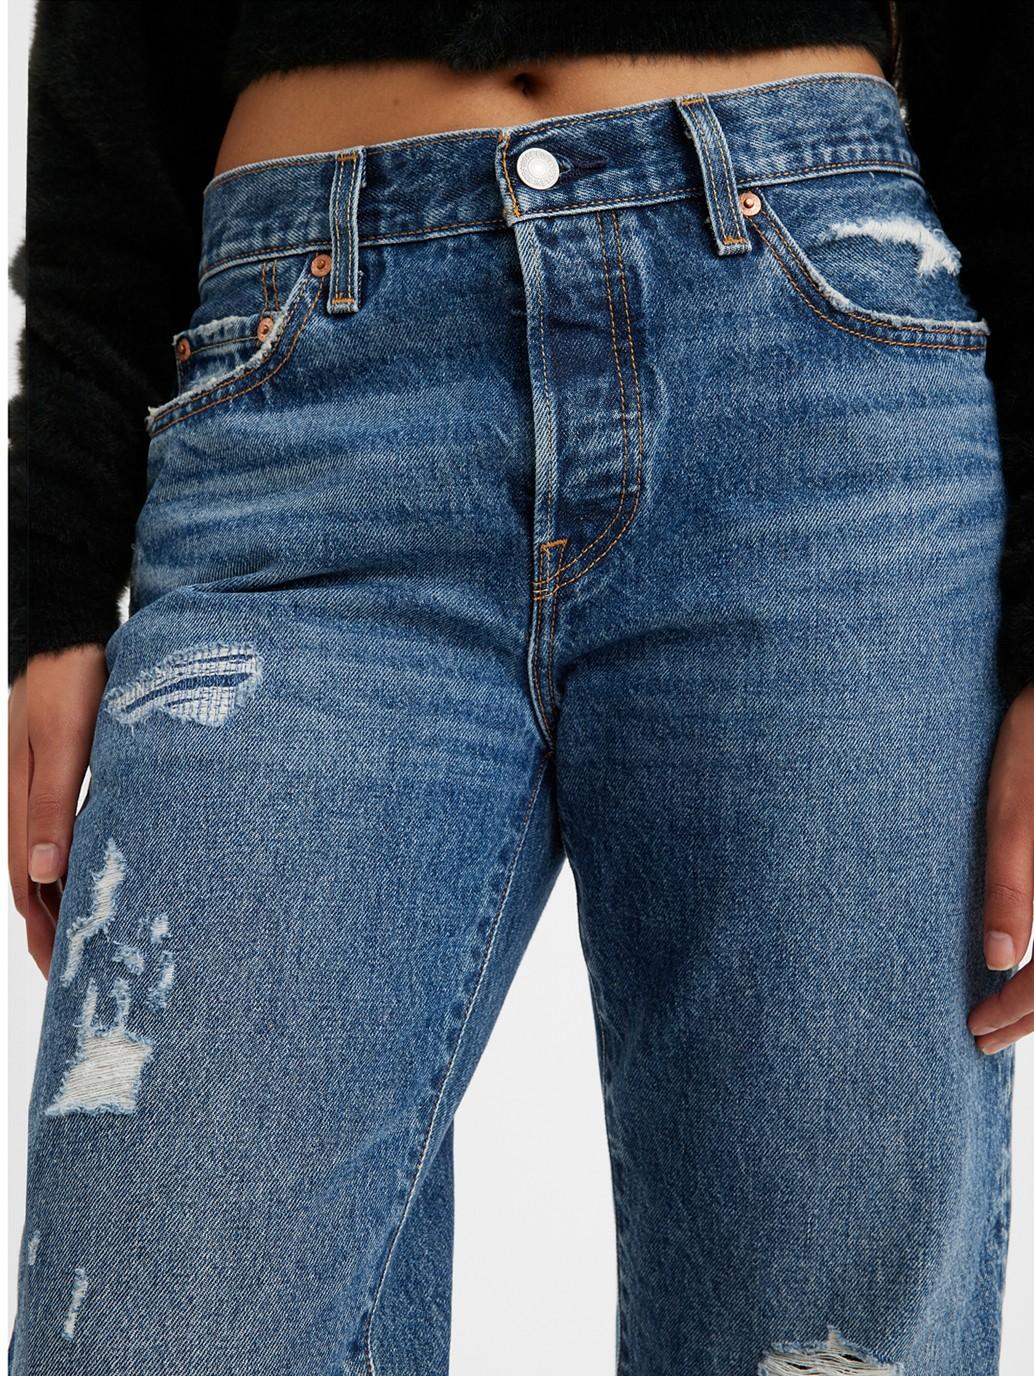 levis singapore womens 501 90s jeans new A19590010 16 Details